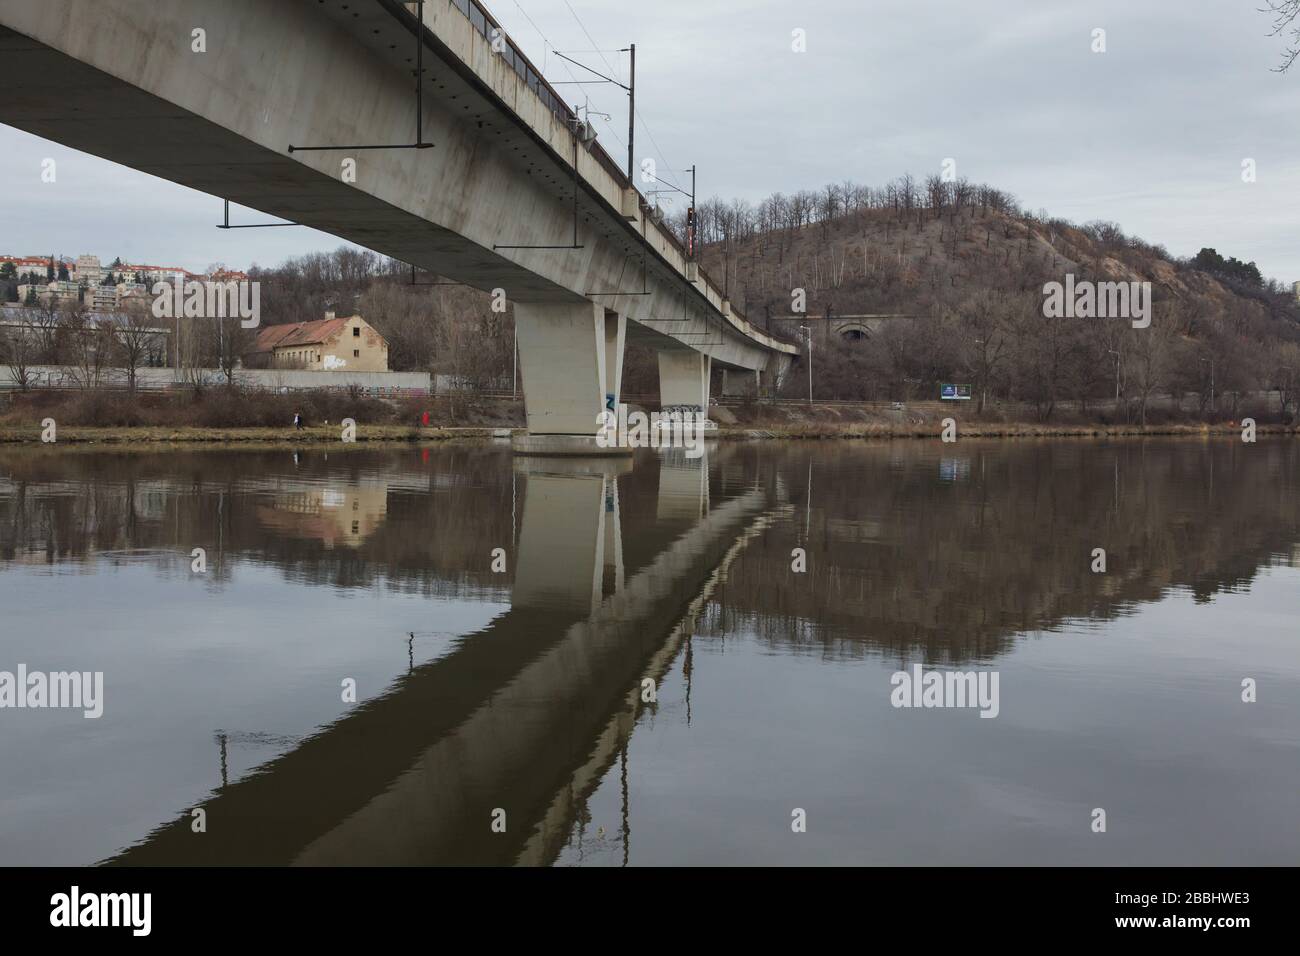 Puente ferroviario de Holesovice (Holešovický železniční Most) sobre el río Vltava en el distrito de Holesovice en Praga, República Checa. El monumento natural Bílá skála (Roca Blanca) se ve al fondo. Foto de stock